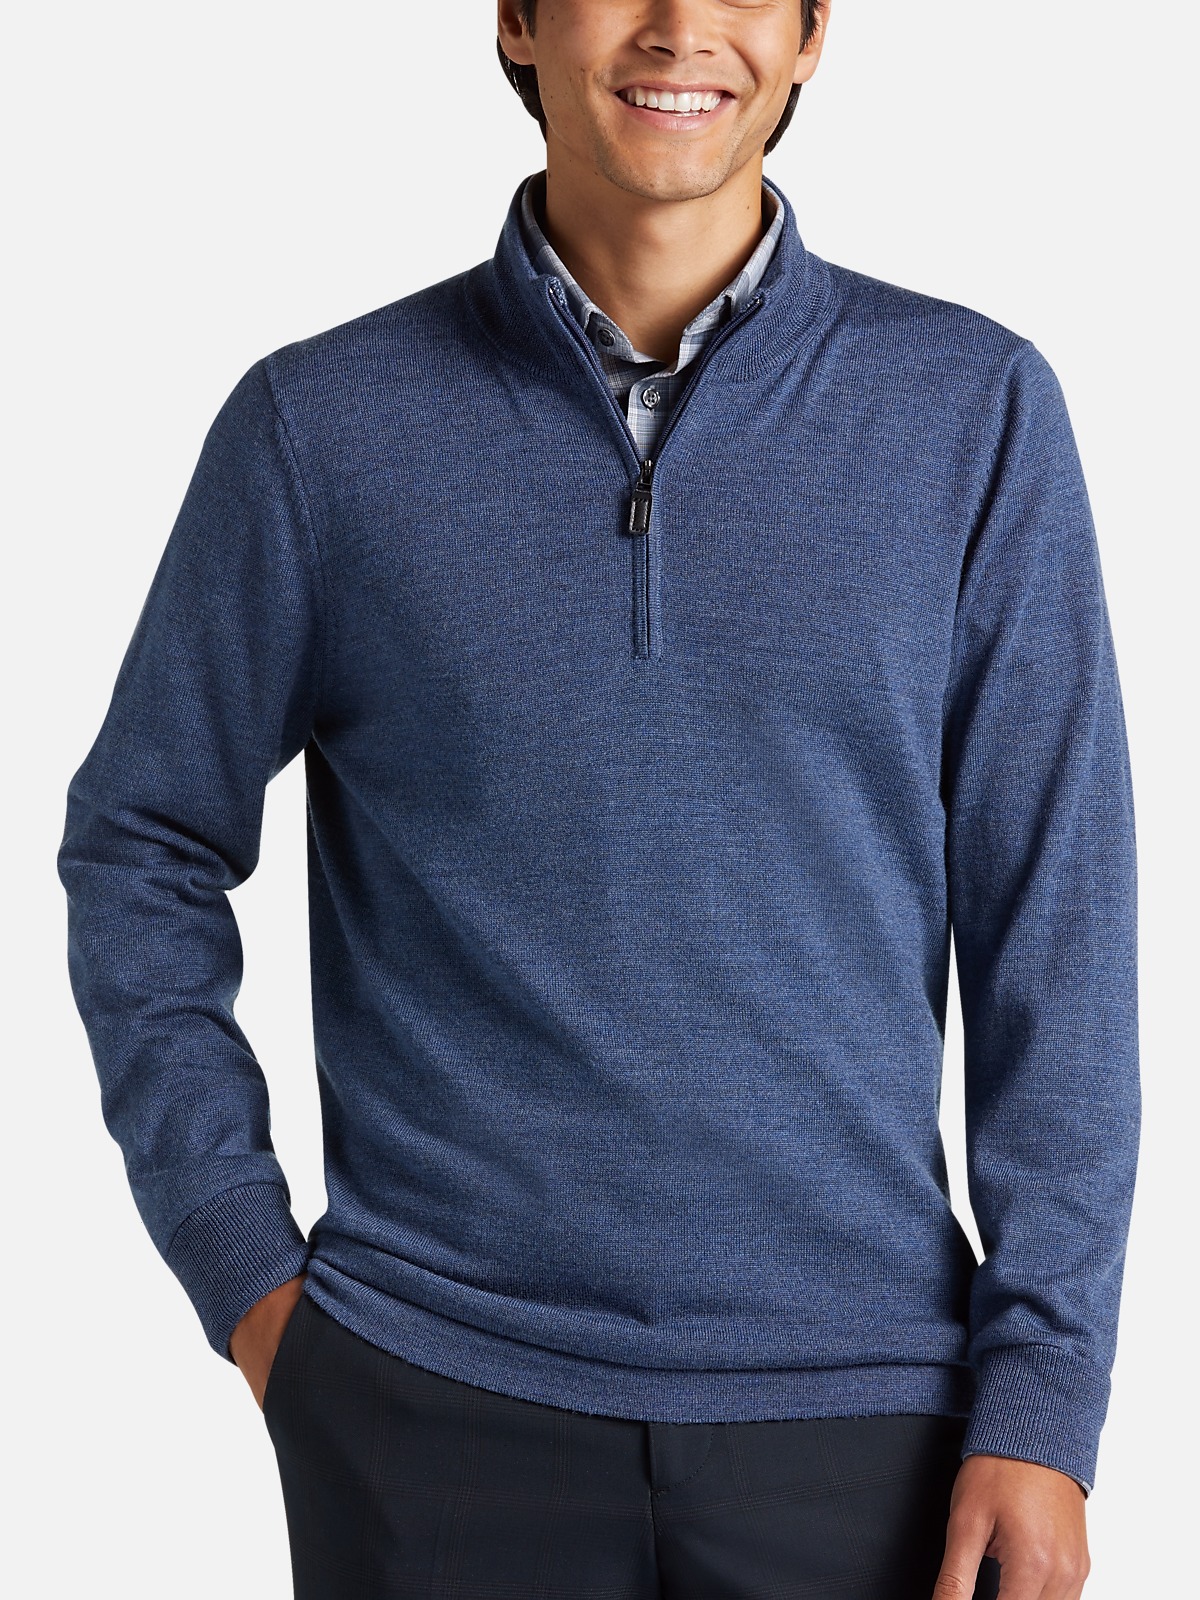 Men's Premium Quarter-Zip Merino Sweater in Dark Navy from Joe Fresh